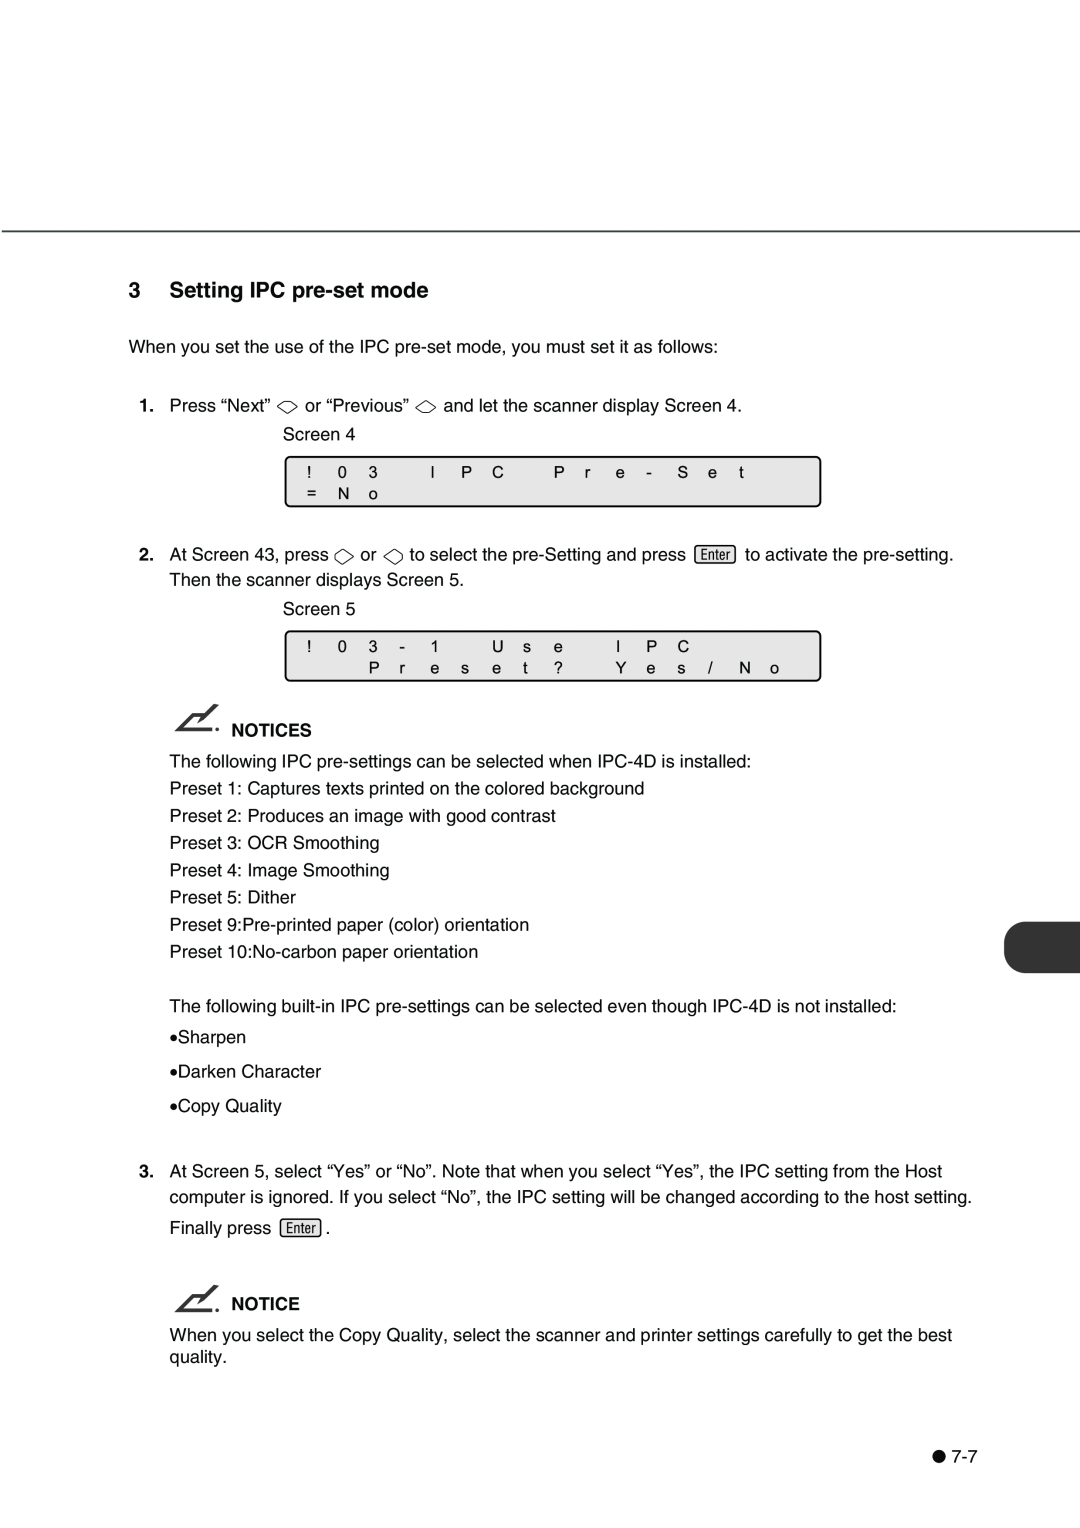 Fujitsu fi-4340C manual Setting IPC pre-set mode, Notices 